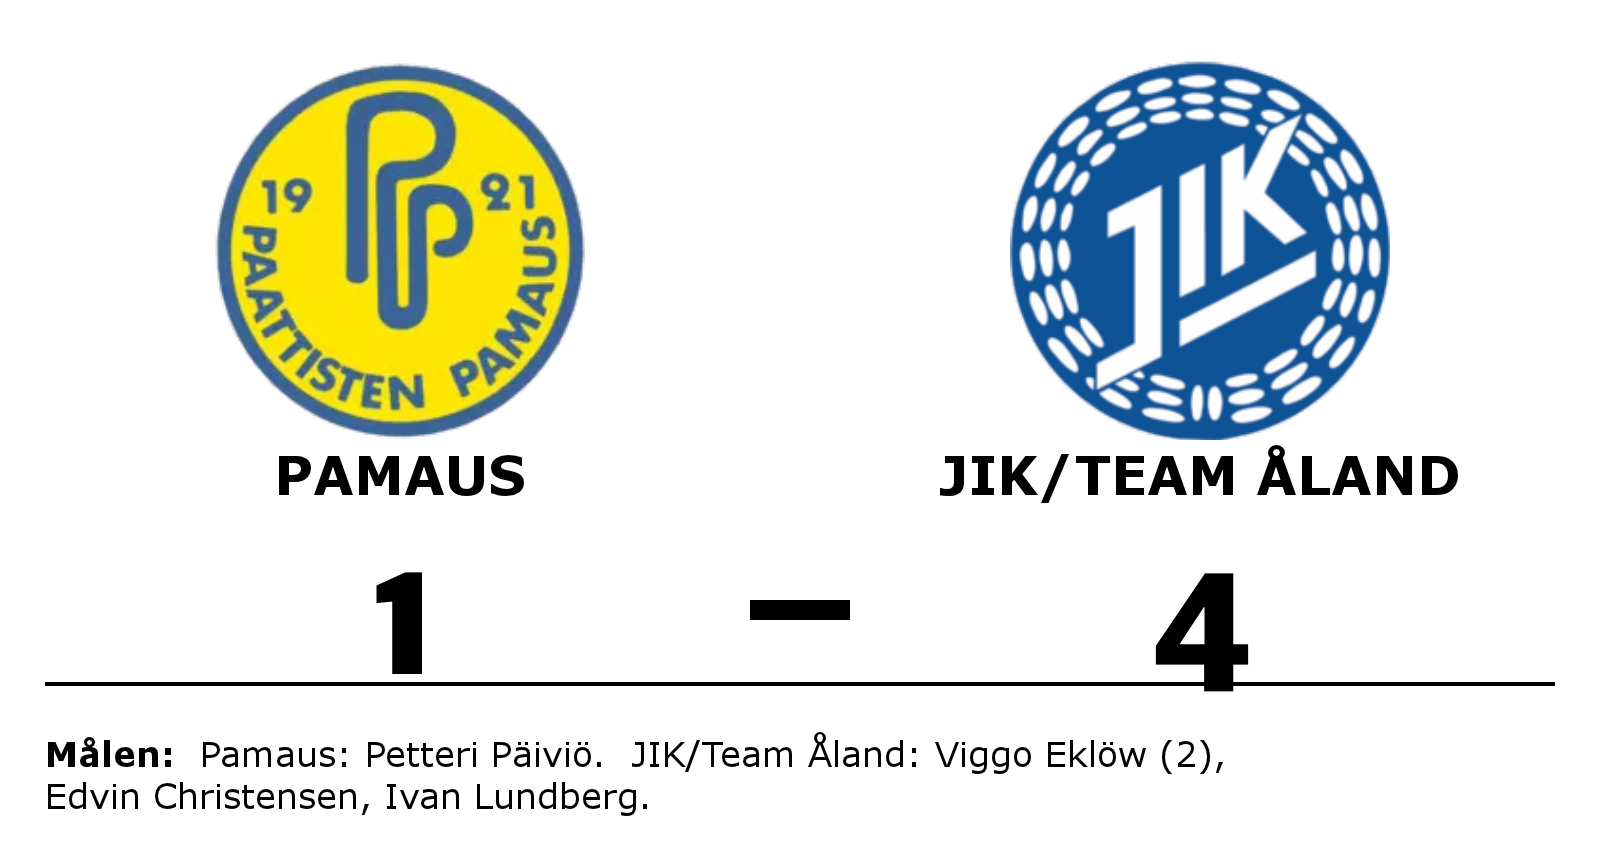 Pamaus förlorade mot JIK/Team Åland